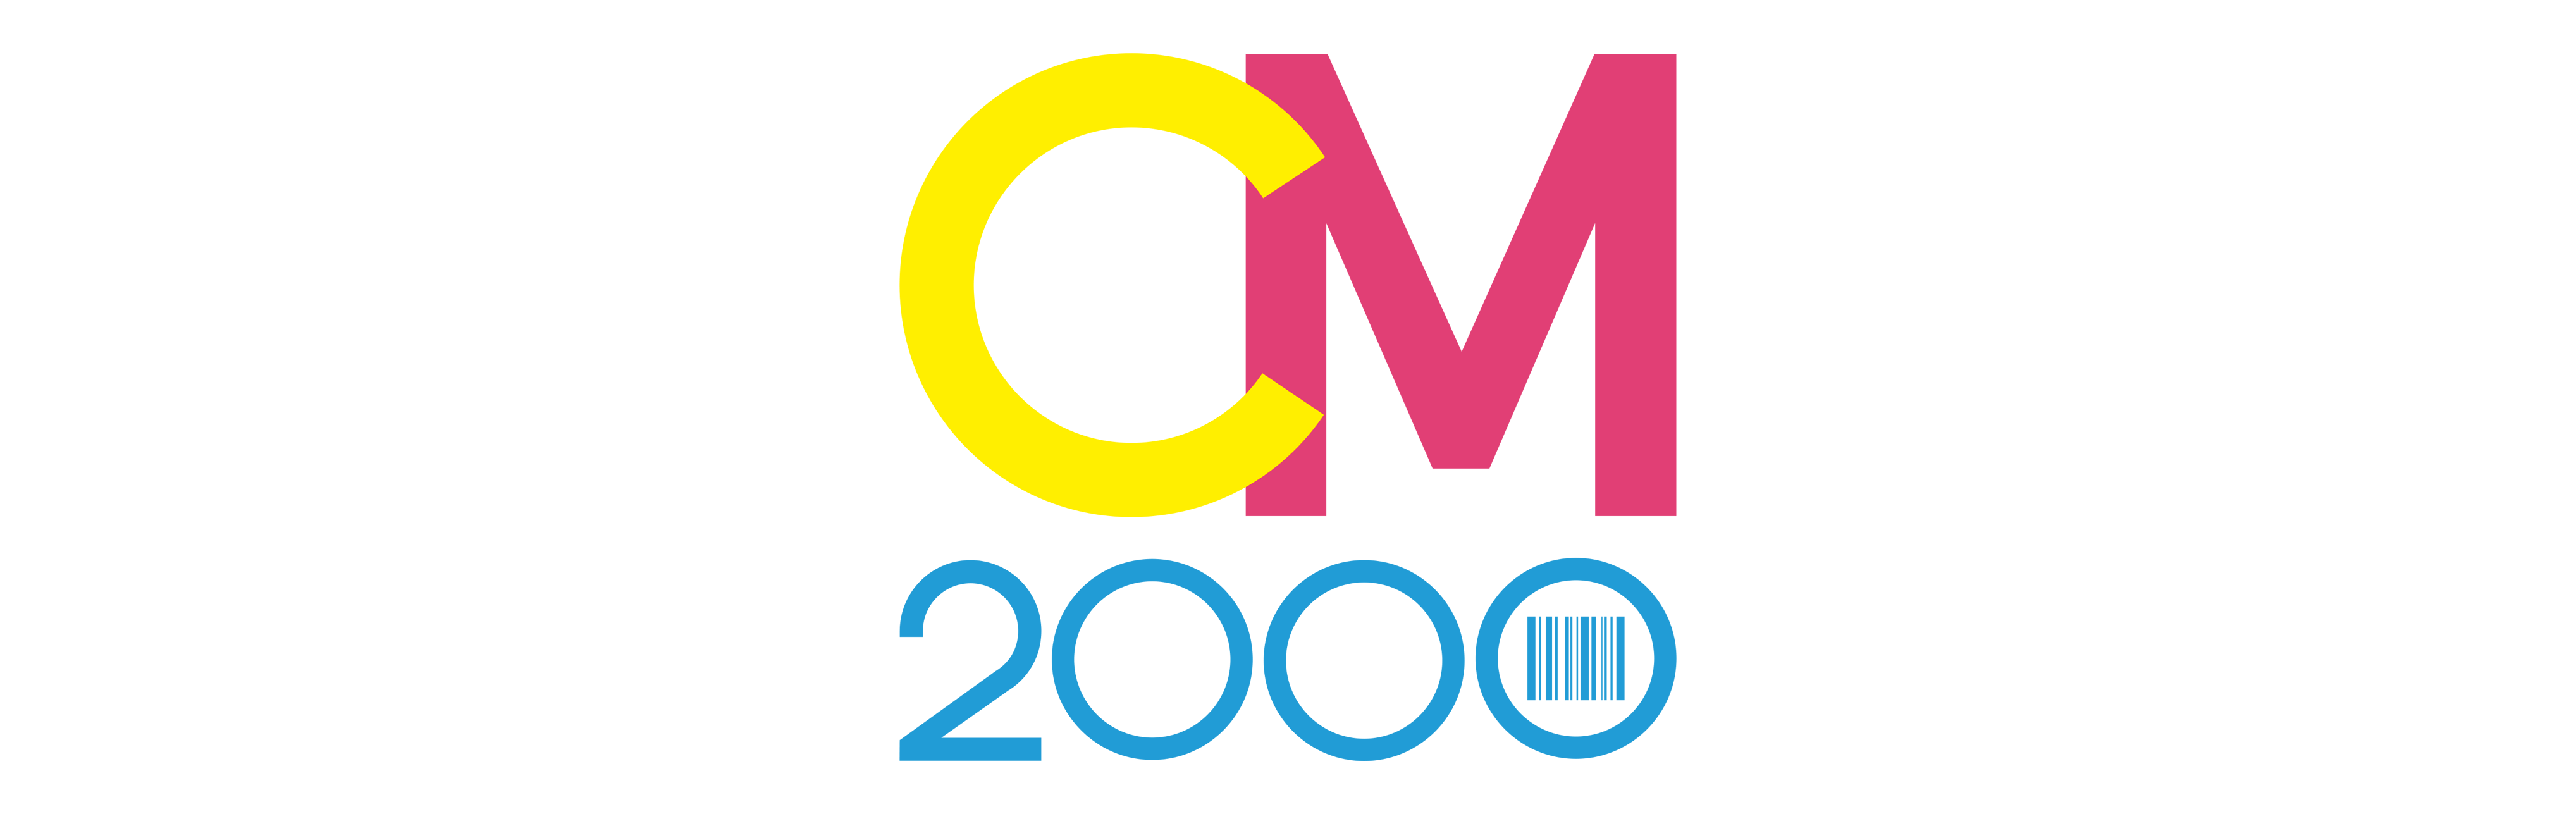 CM2000